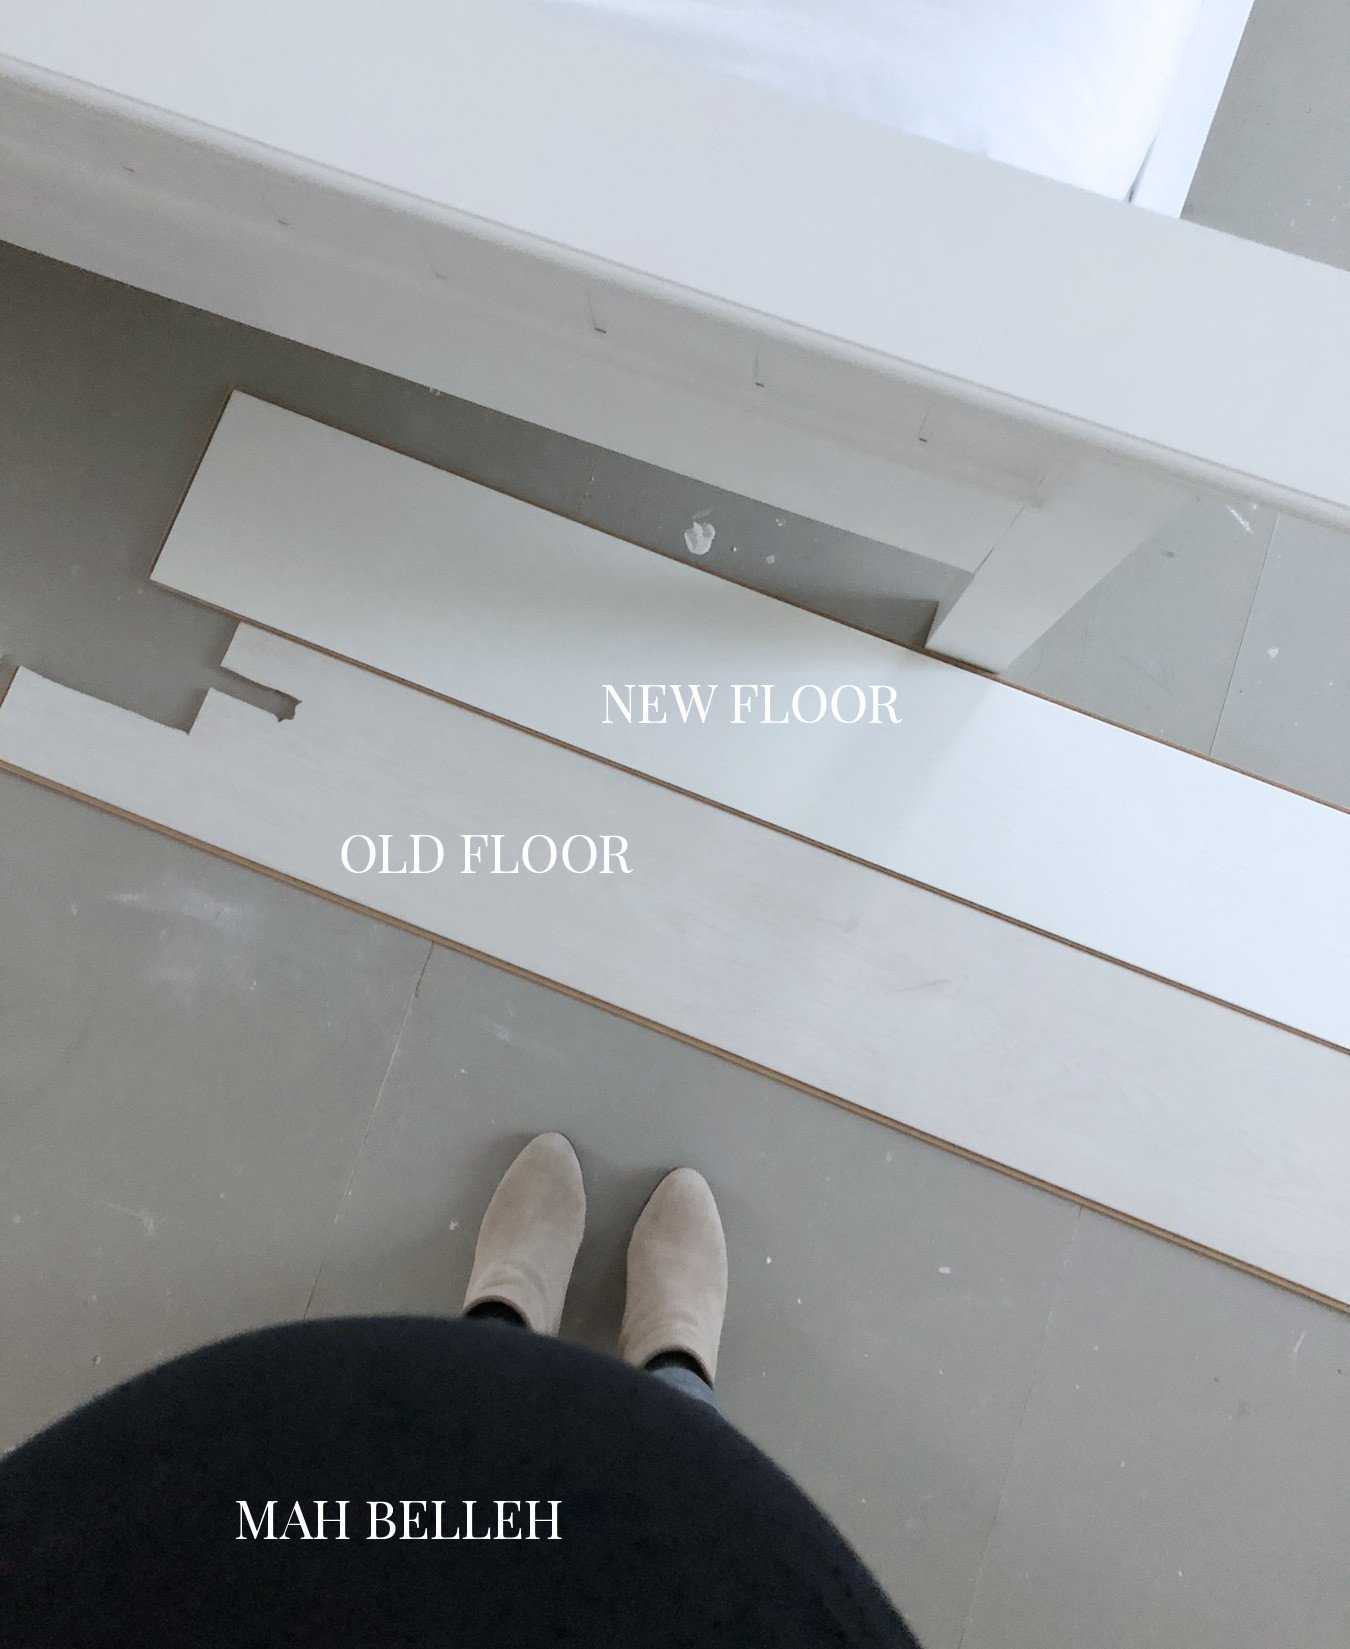 new floor/old floor comparison